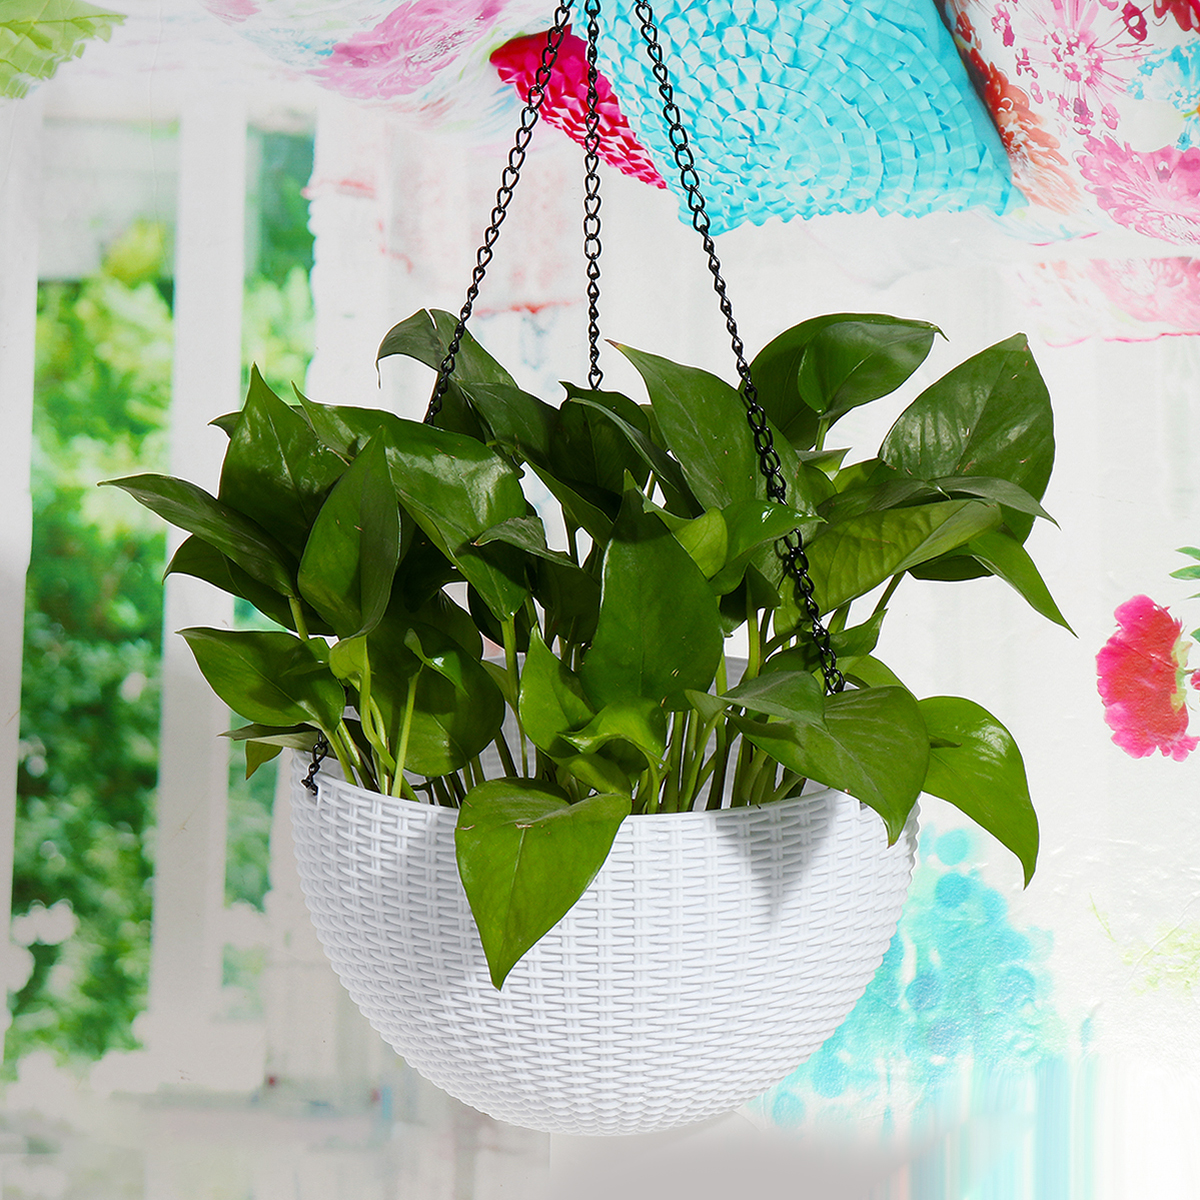 Hanging Planter Flower Pot Holder Rattan Baskets for Home & Garden - image 4 of 6